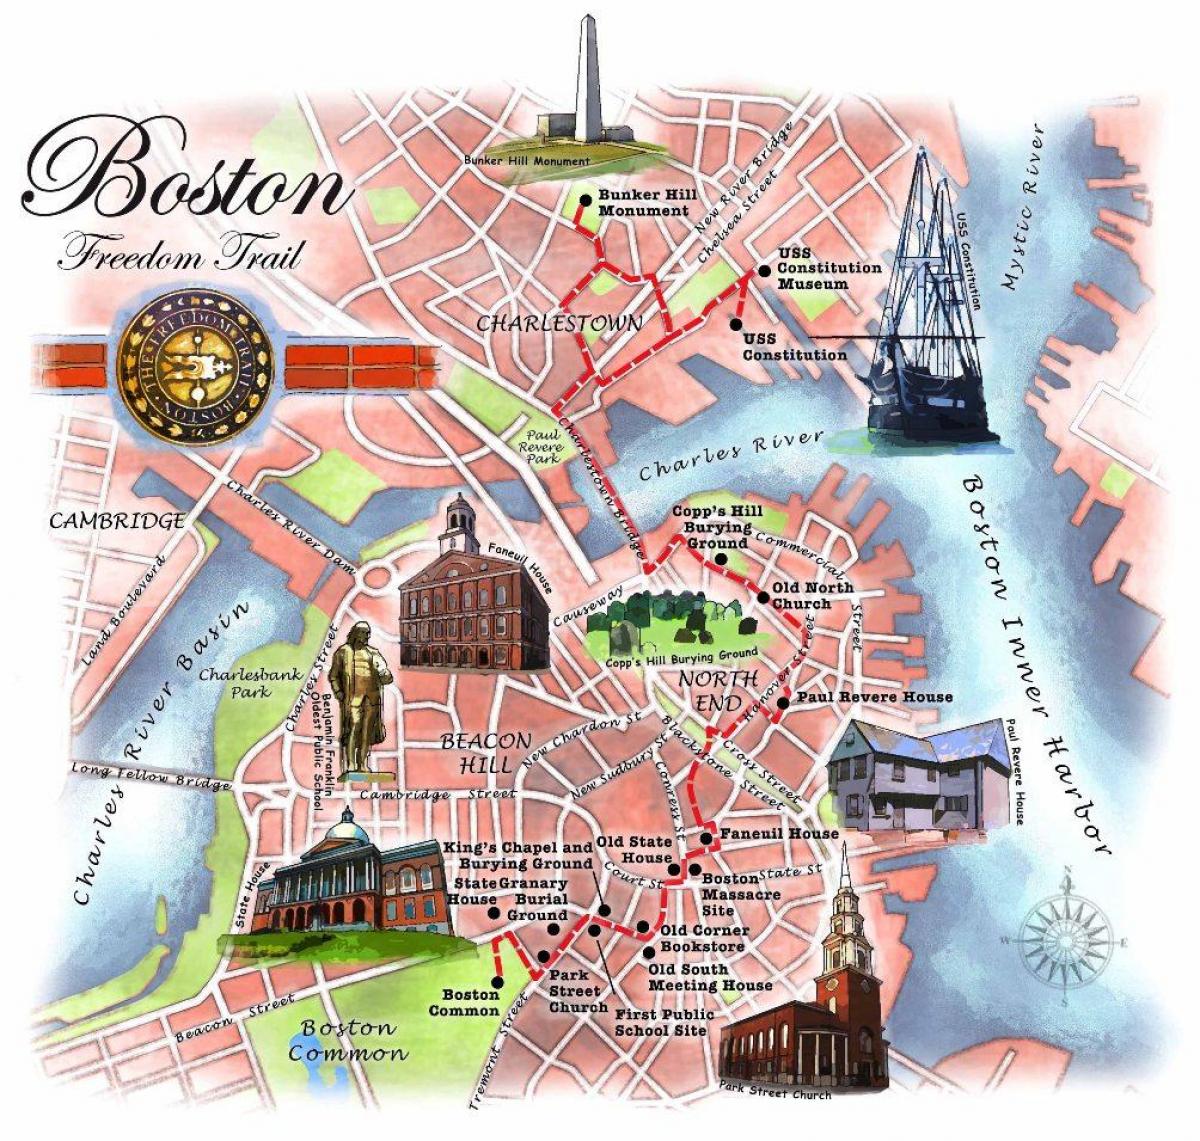 térkép Boston freedom trail